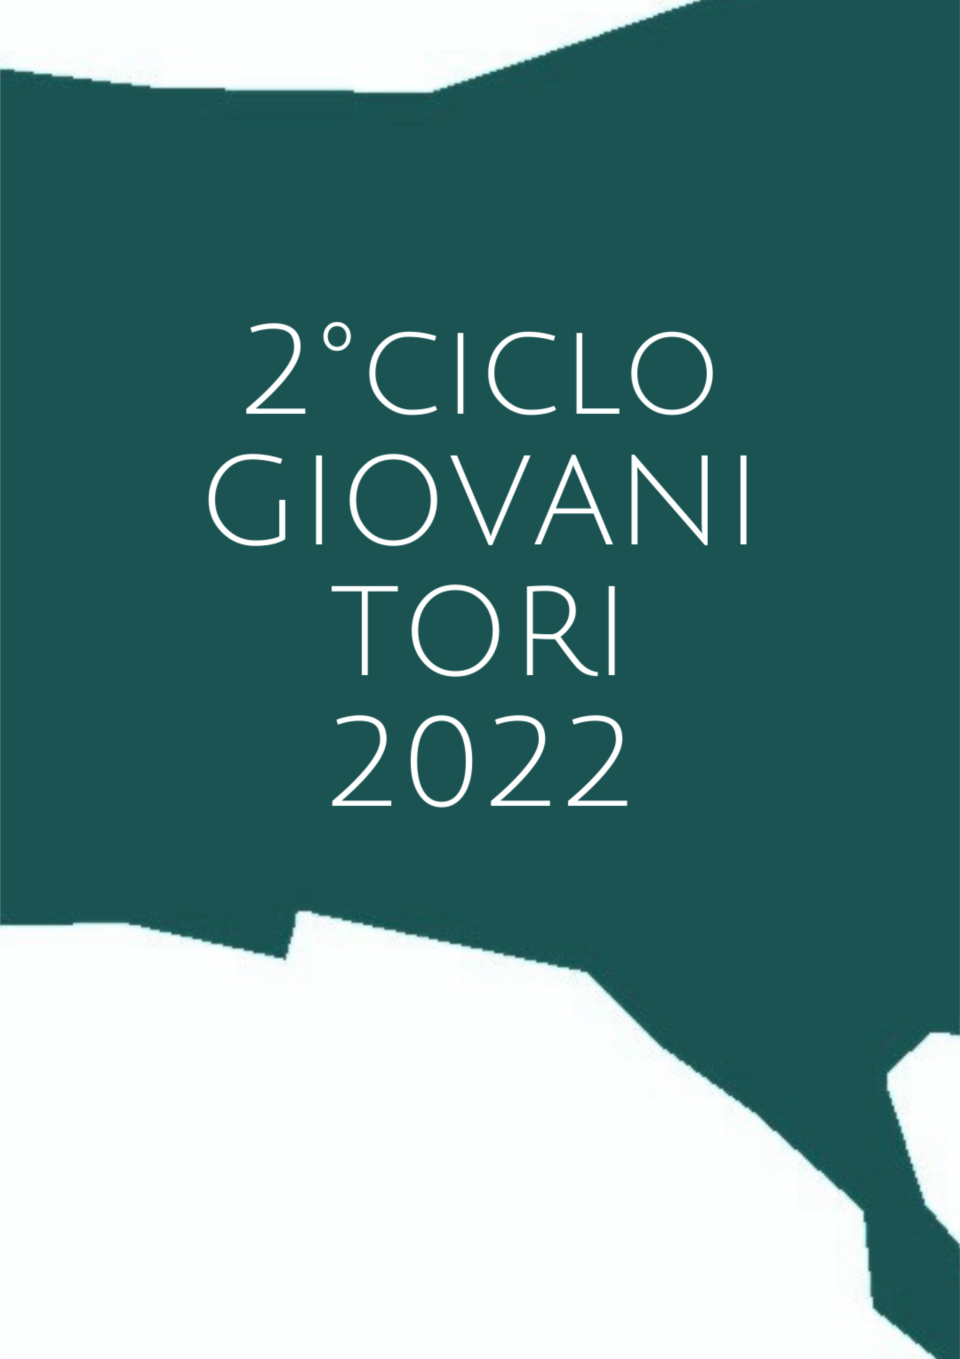 2&#176;CICLO 2022 GIOVANI TORI GENOMICI PEZZATA ROSSA ITALIANA